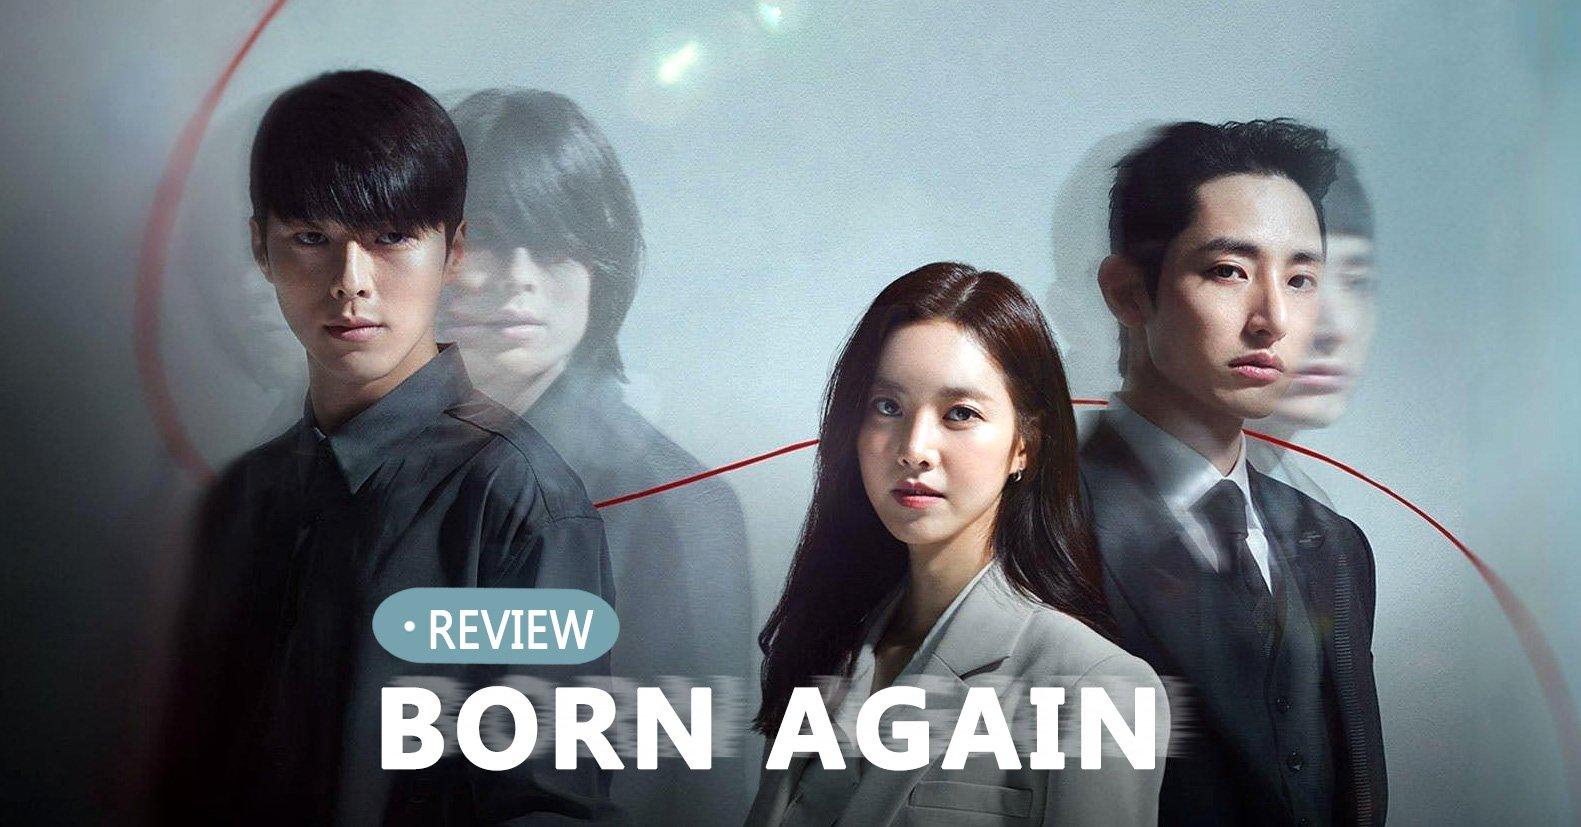 Review phim Born Again: 5 lý do bạn không thể bỏ lỡ siêu phẩm của đài KBS - BlogAnChoi